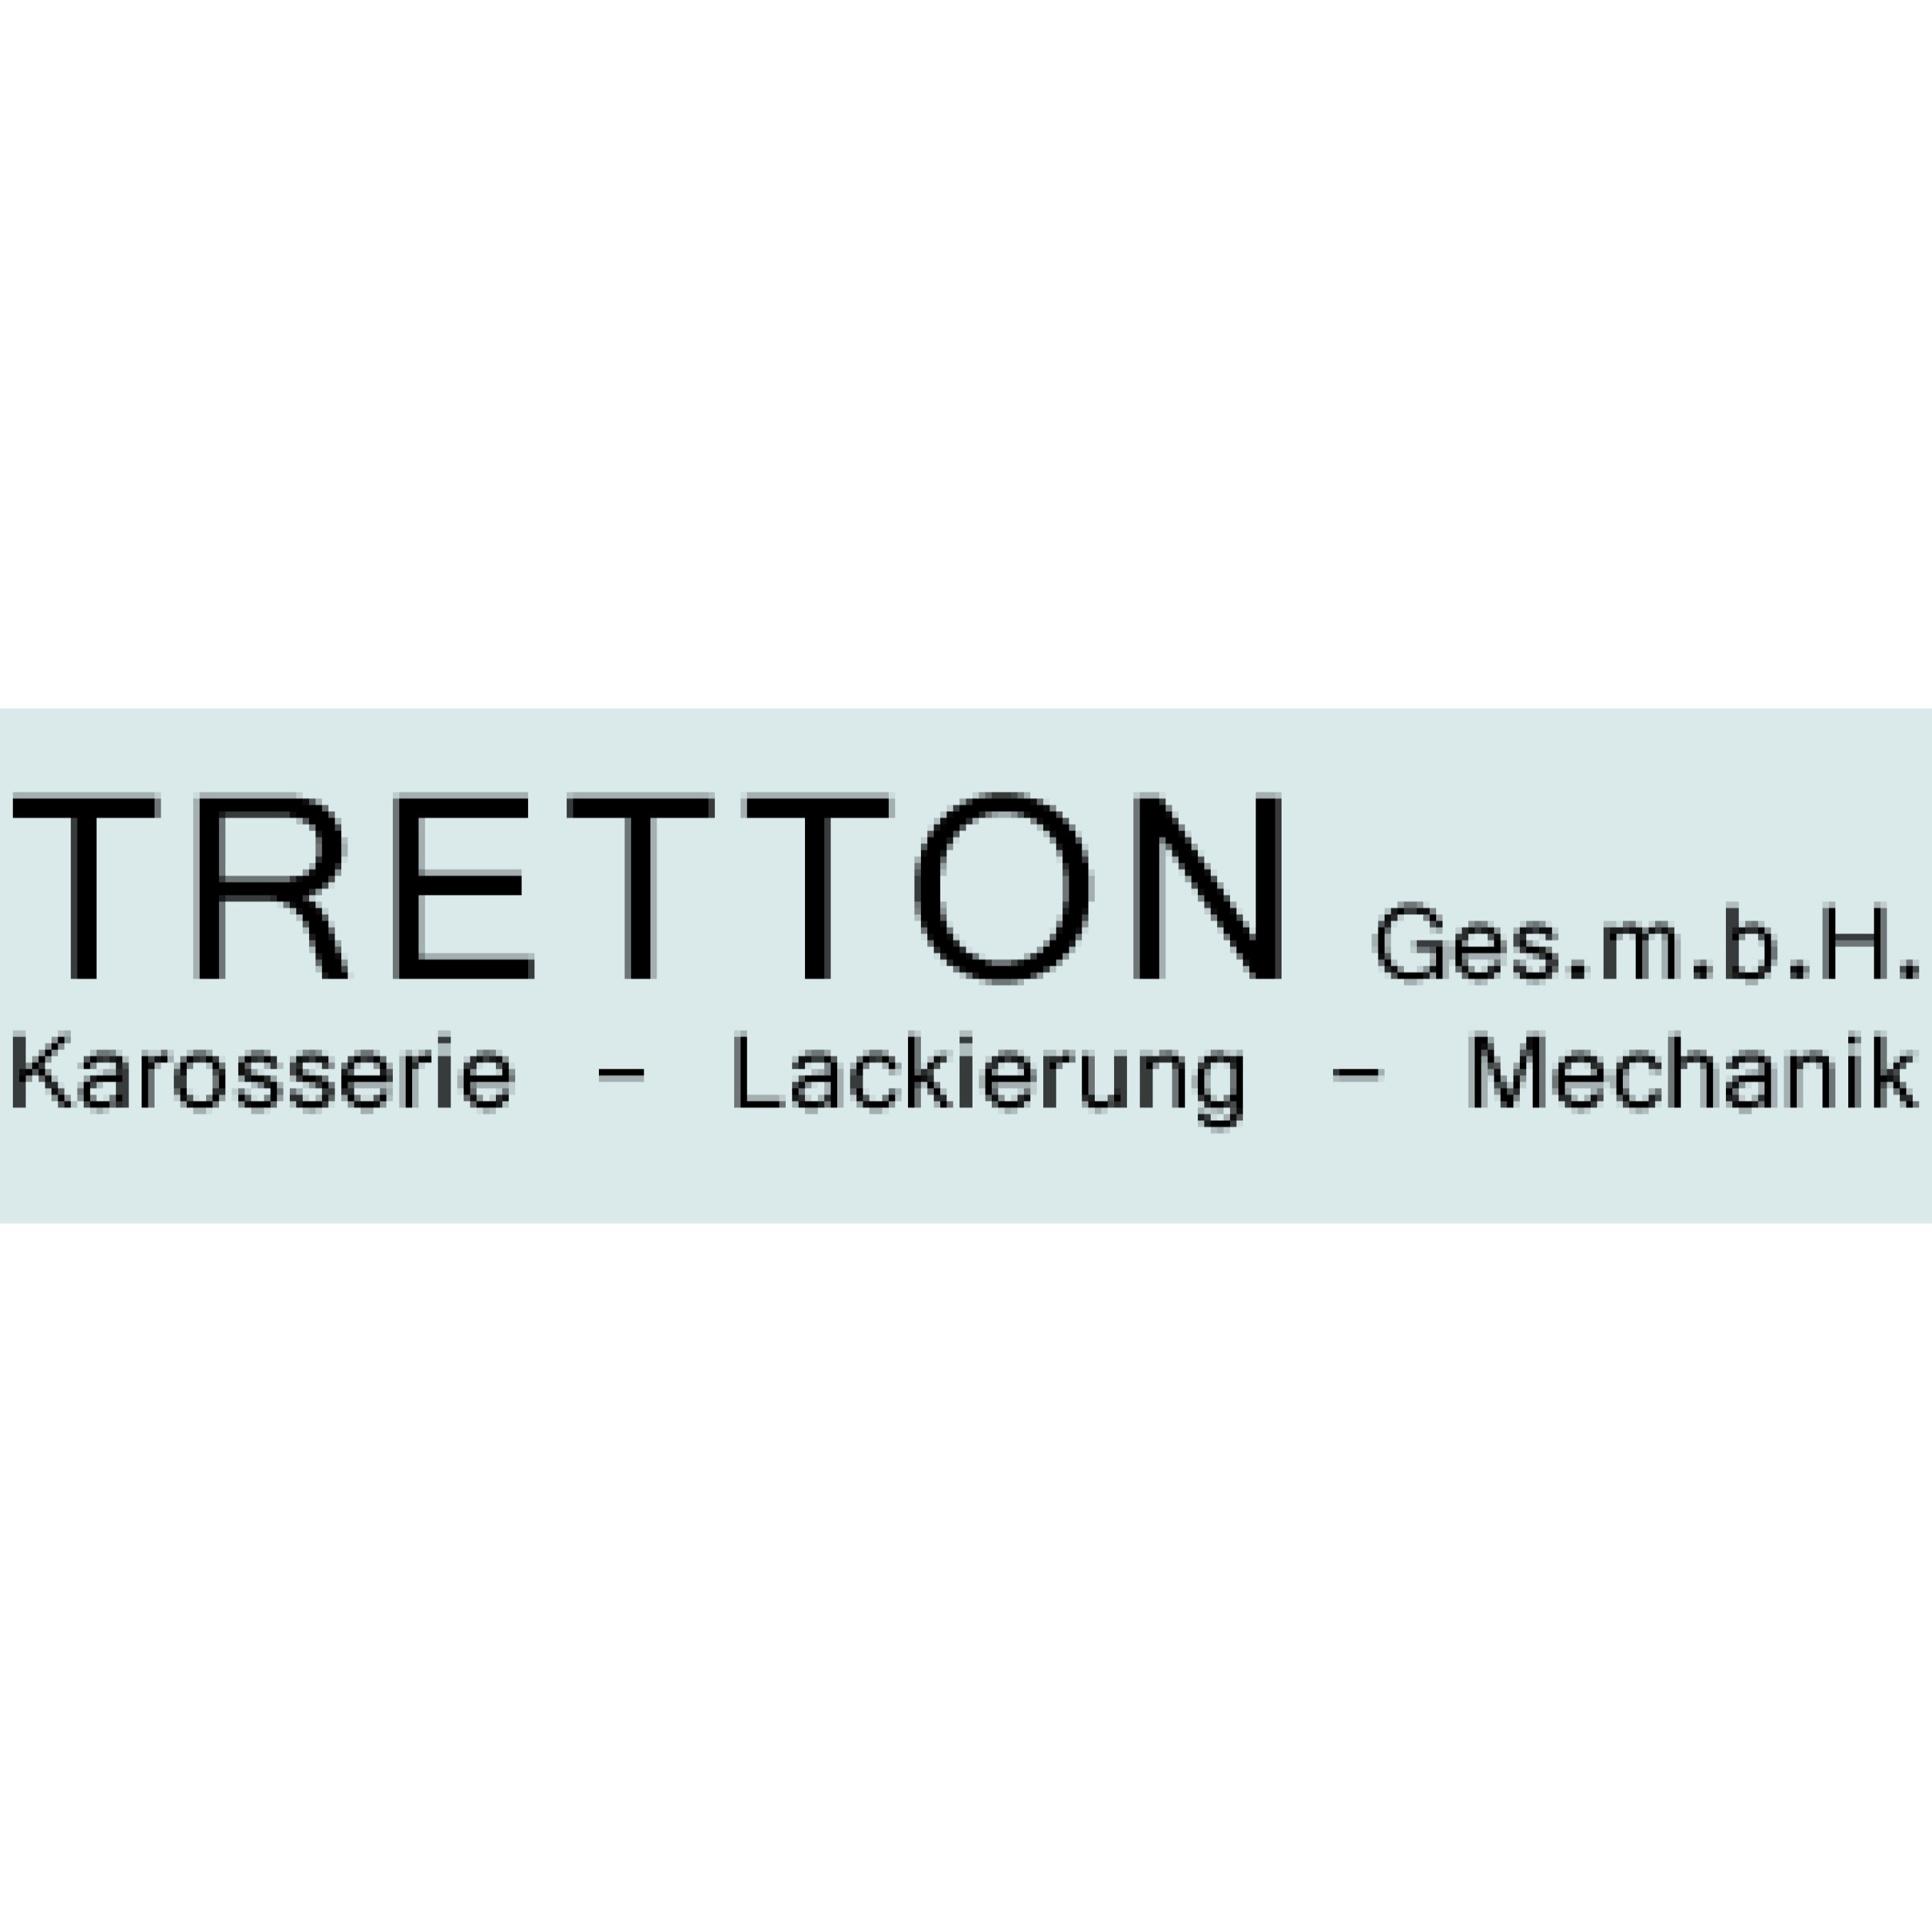 Tretton GesmbH Logo